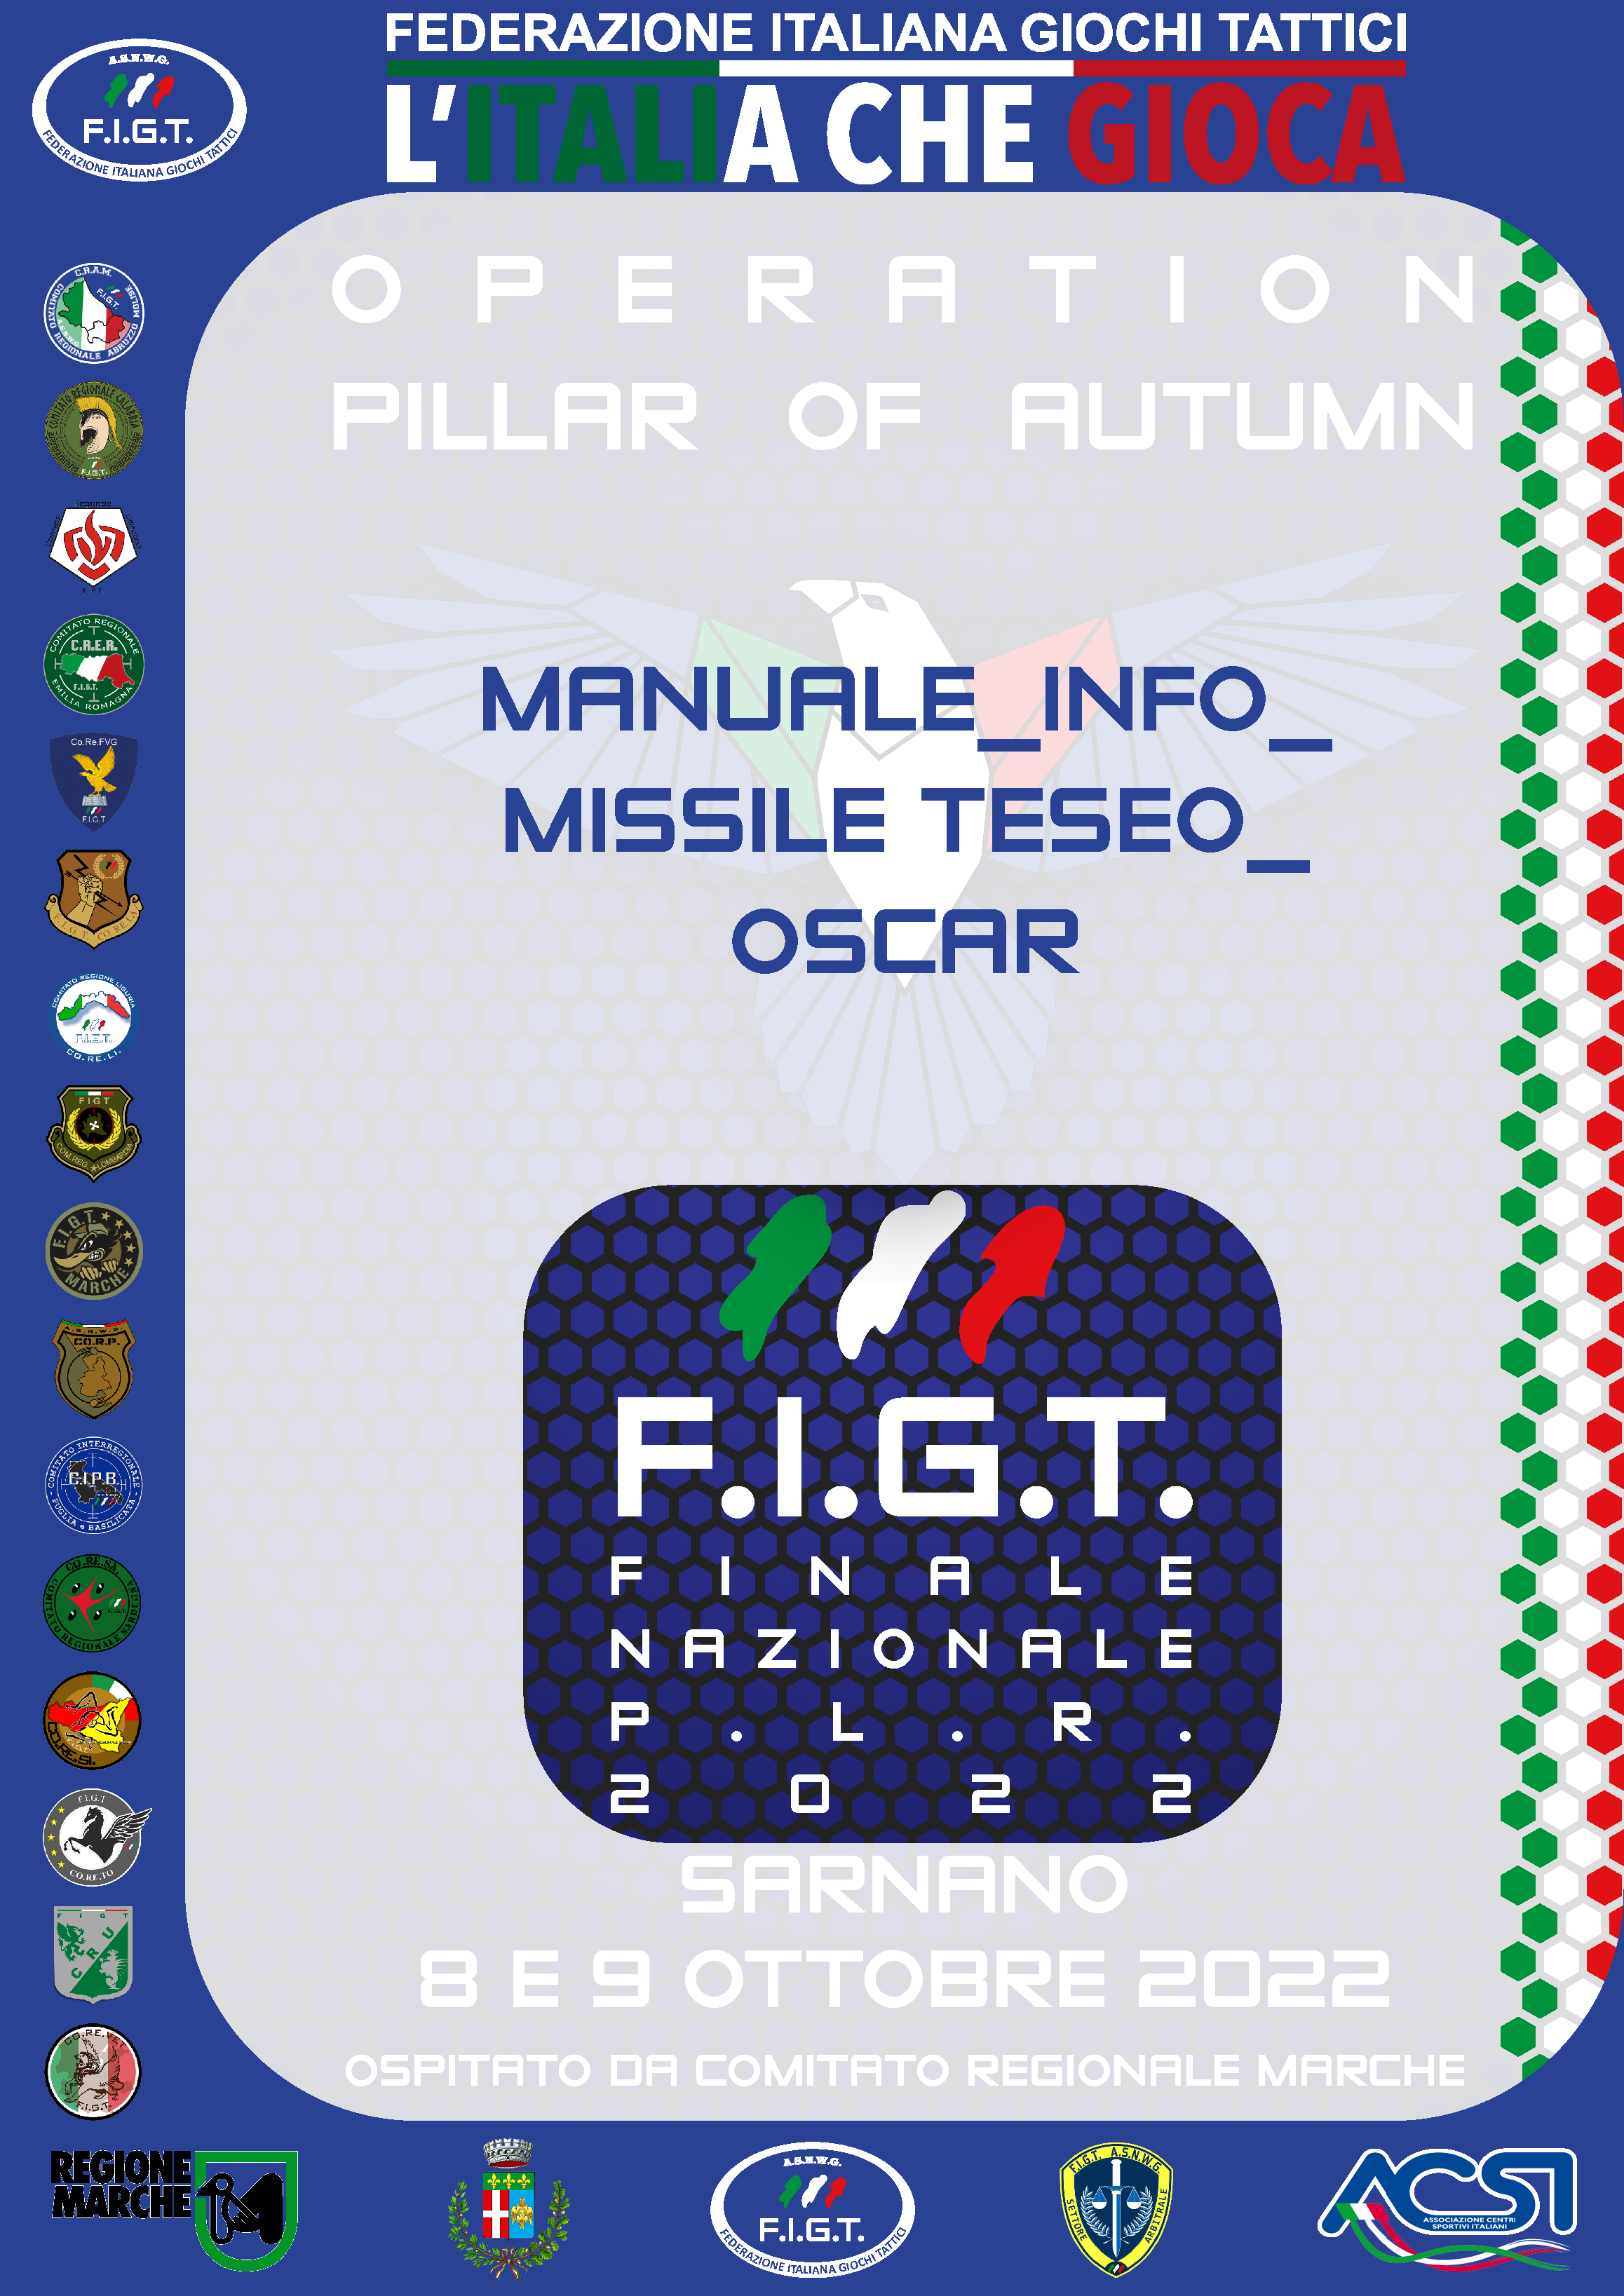 MANUALE_INFO_MISSILE TESEO_OSCAR-04